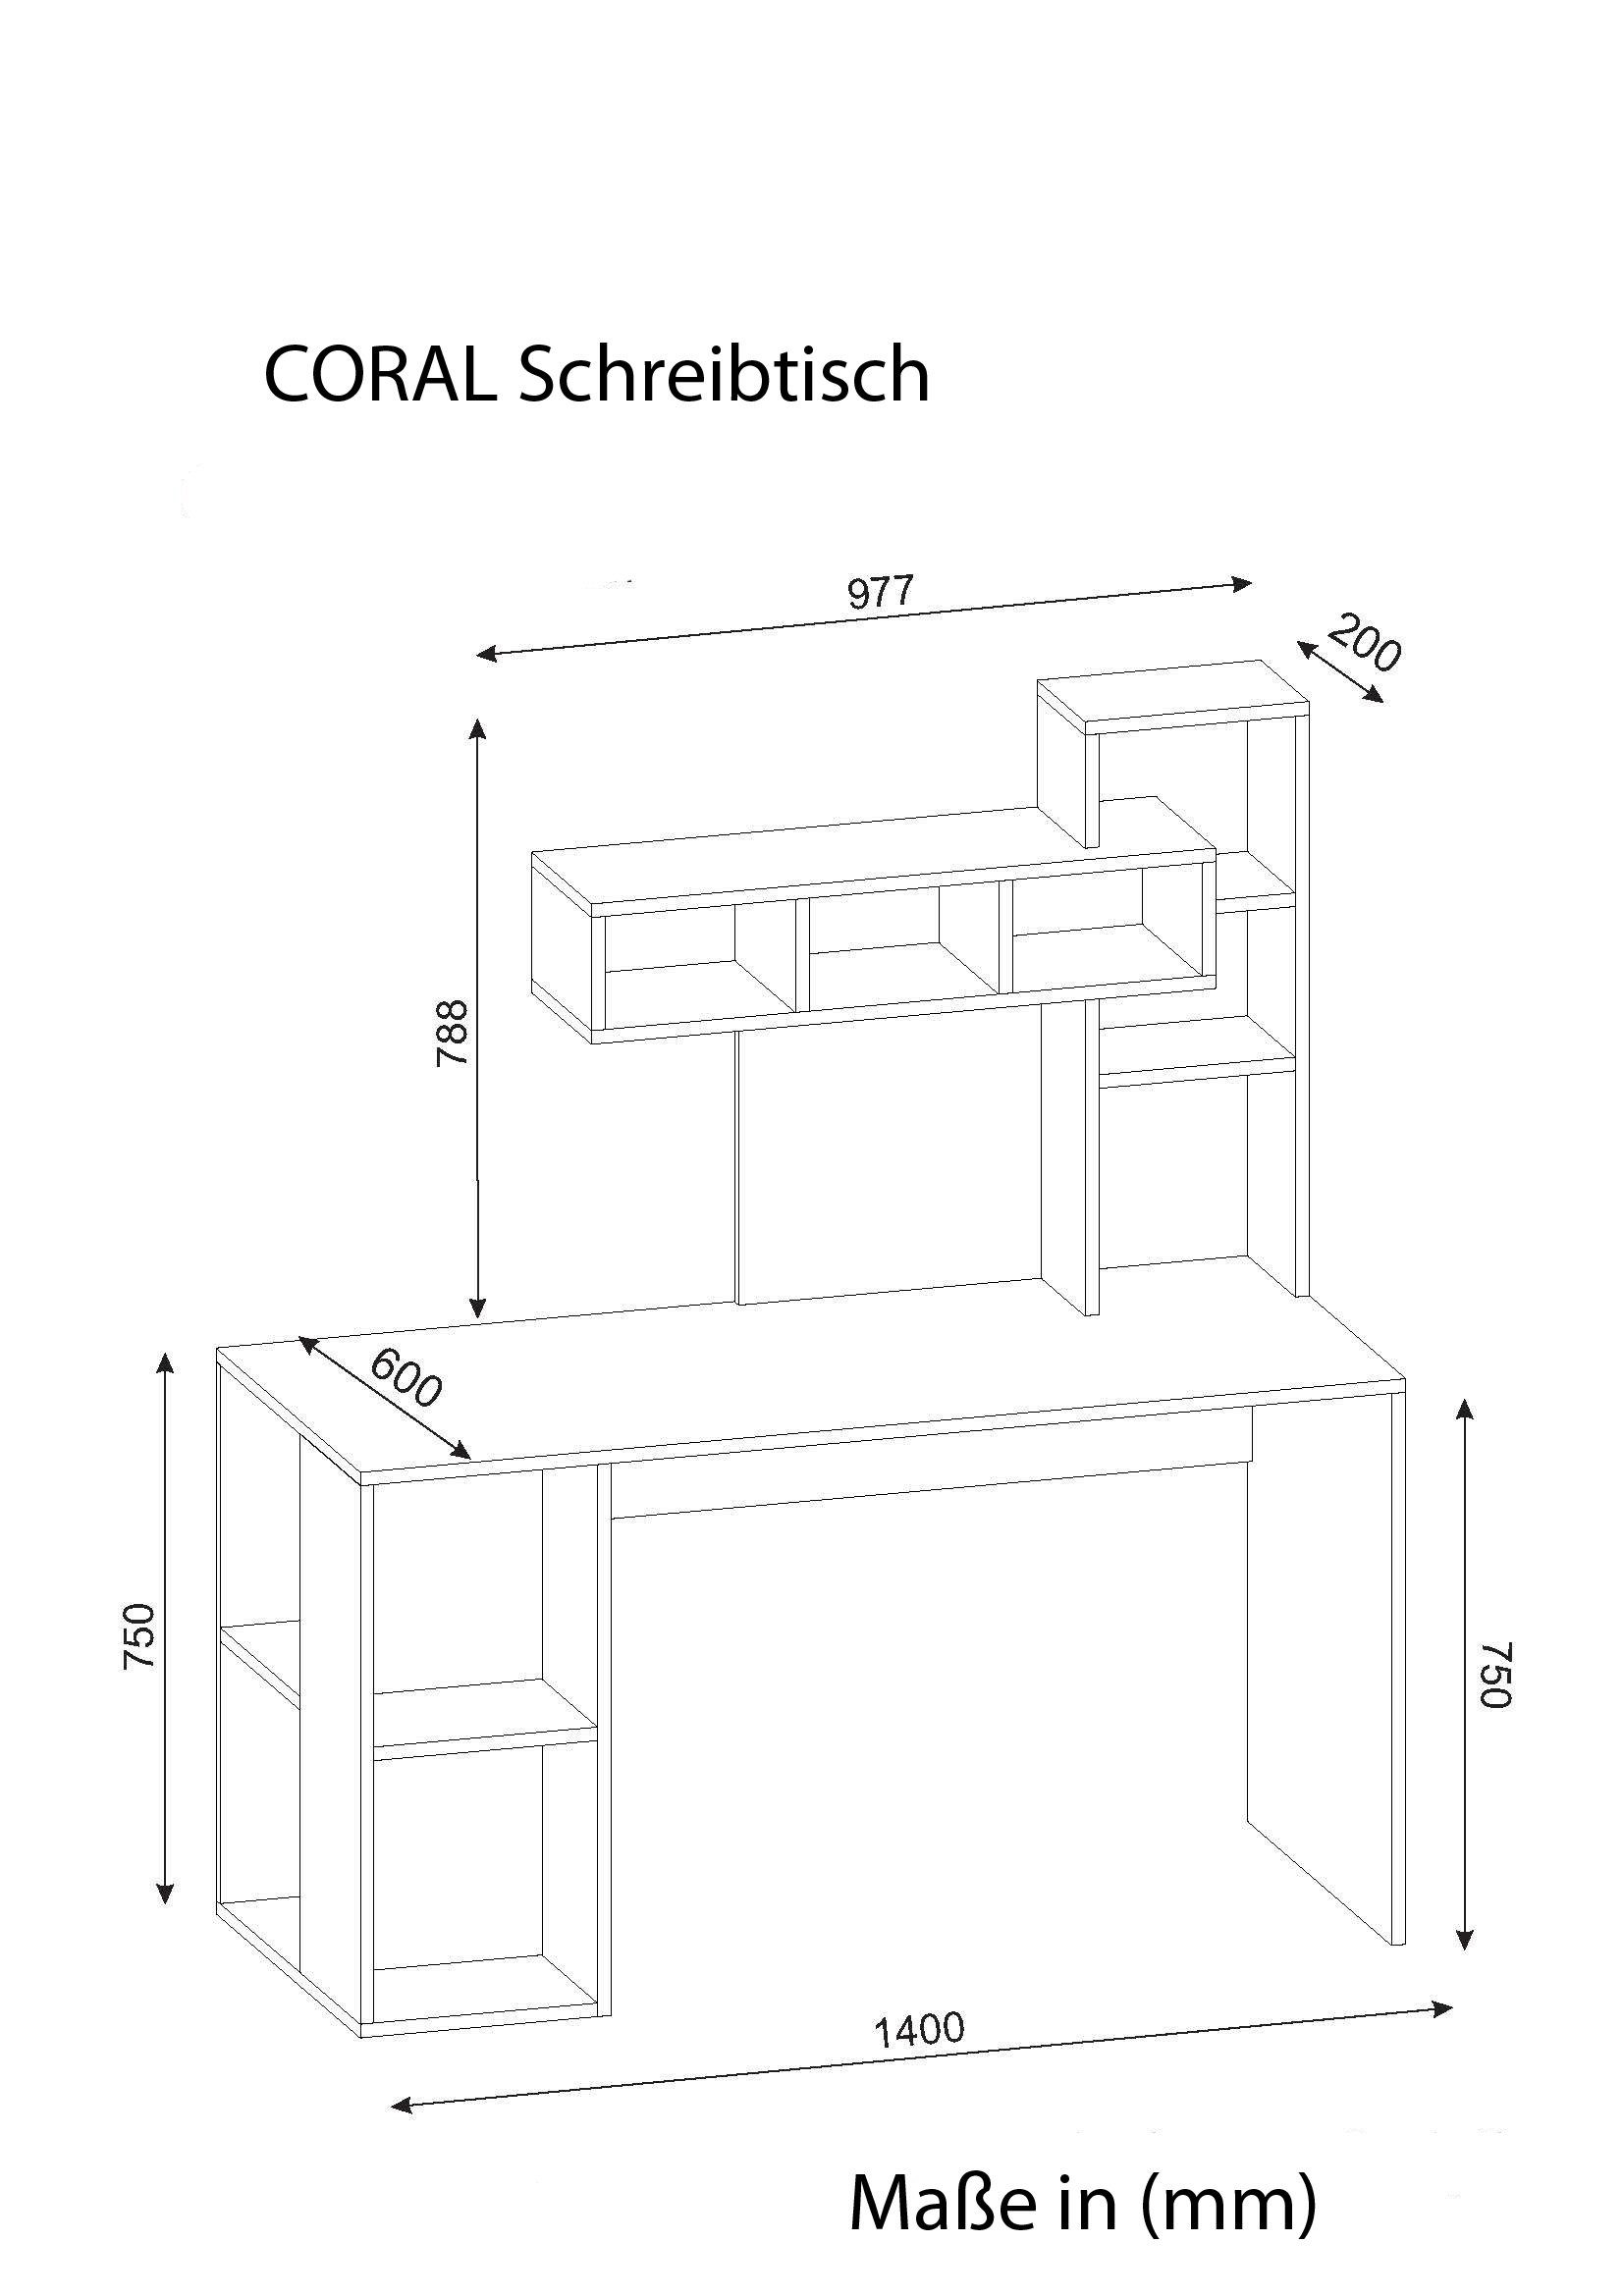 moebel17 Weiß Schreibtisch Weiß Walnuss Coral - Schreibtisch Walnuss